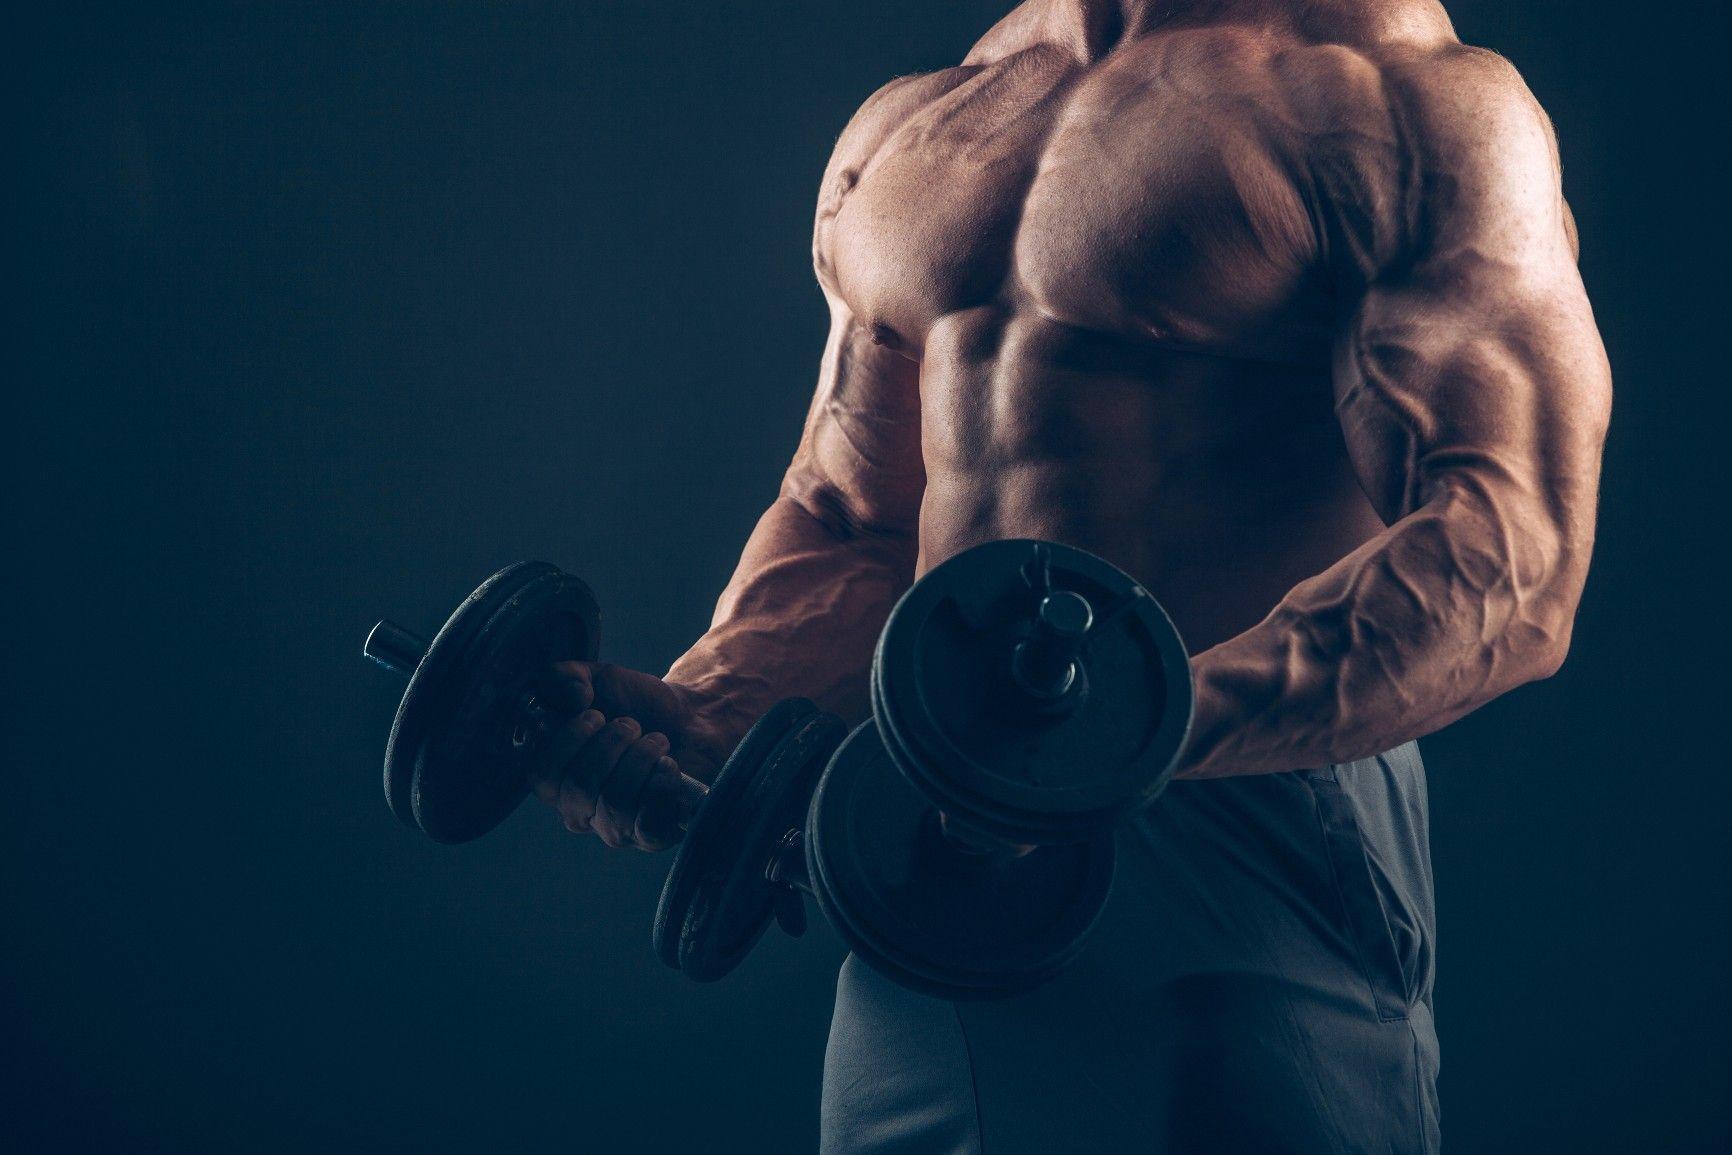 10 Best Biceps in the History of Bodybuilding roelly winklaar HD wallpaper   Pxfuel